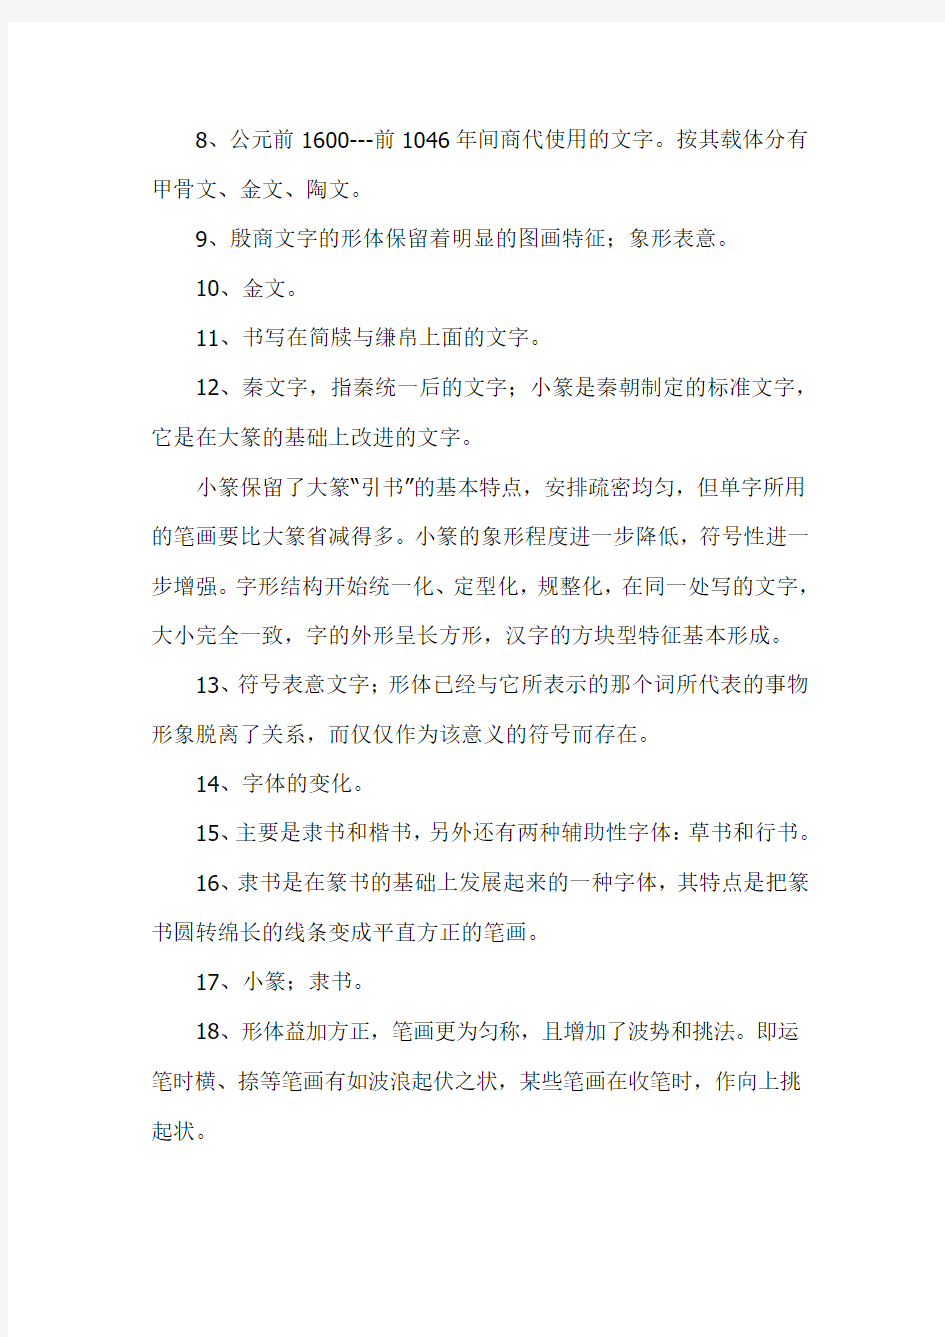 2017年电大古代汉语专题形成性考核册作业答案个人整理